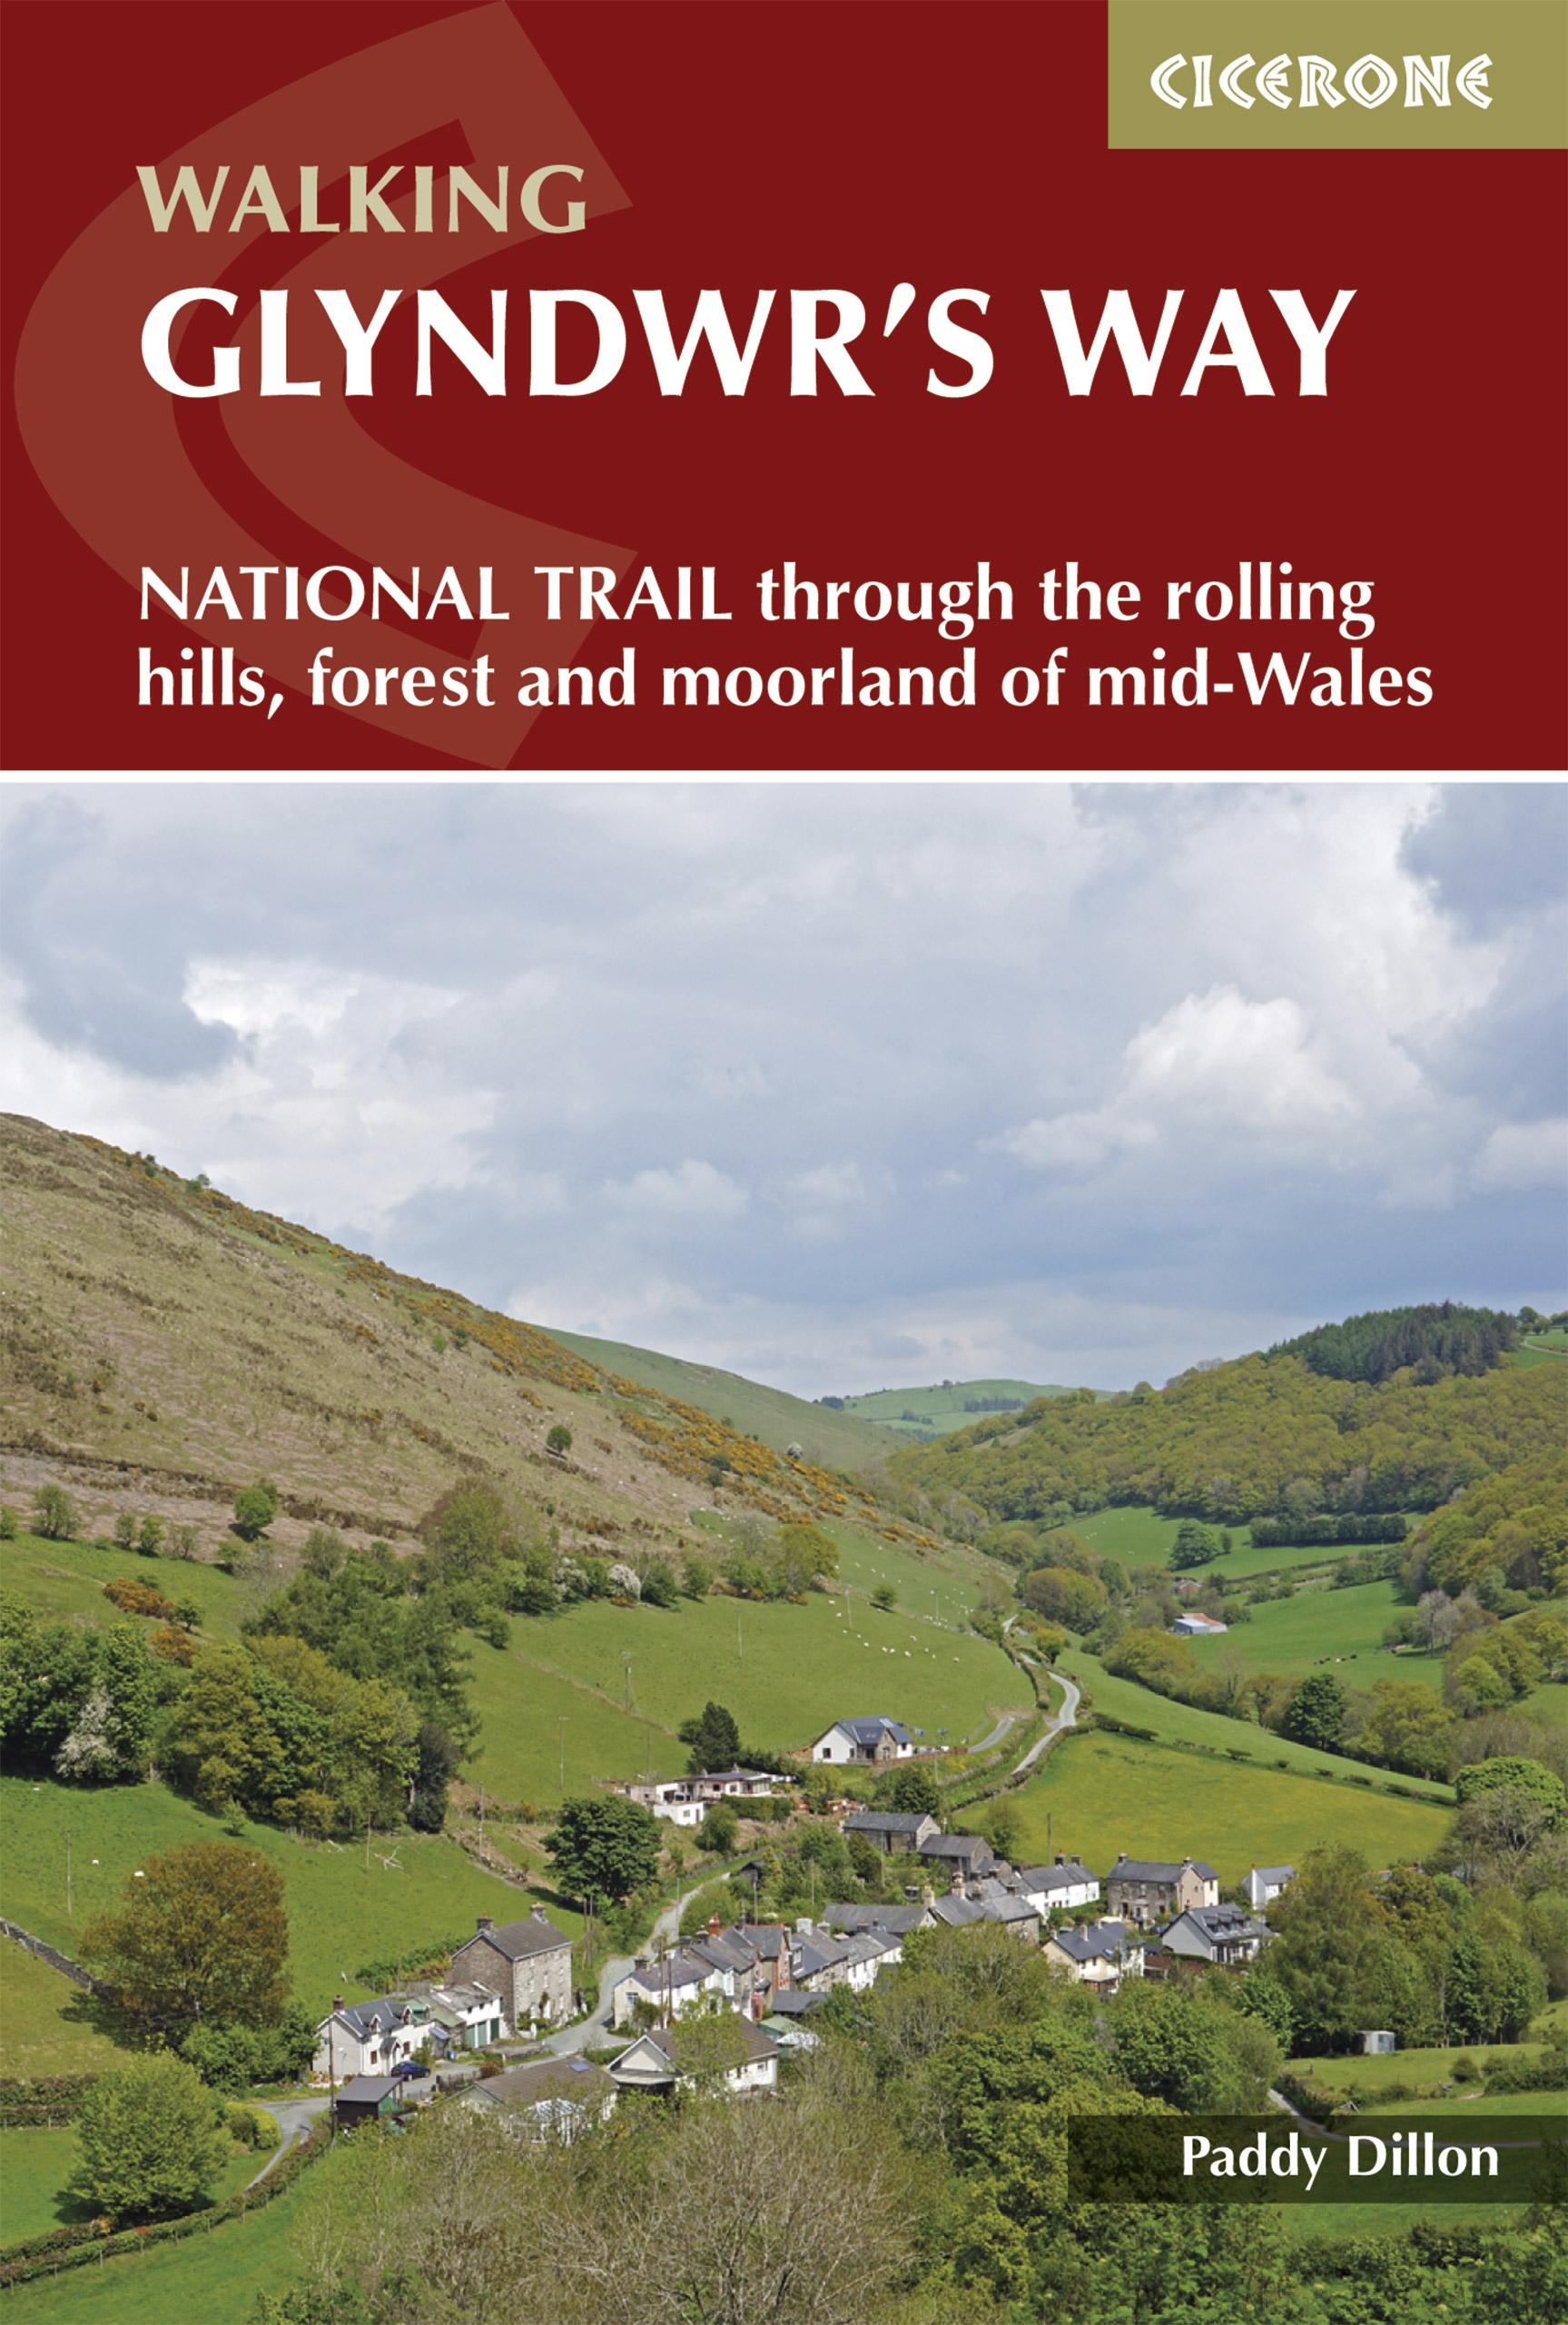 Glyndwr's Way: A National Trail through mid-Wales